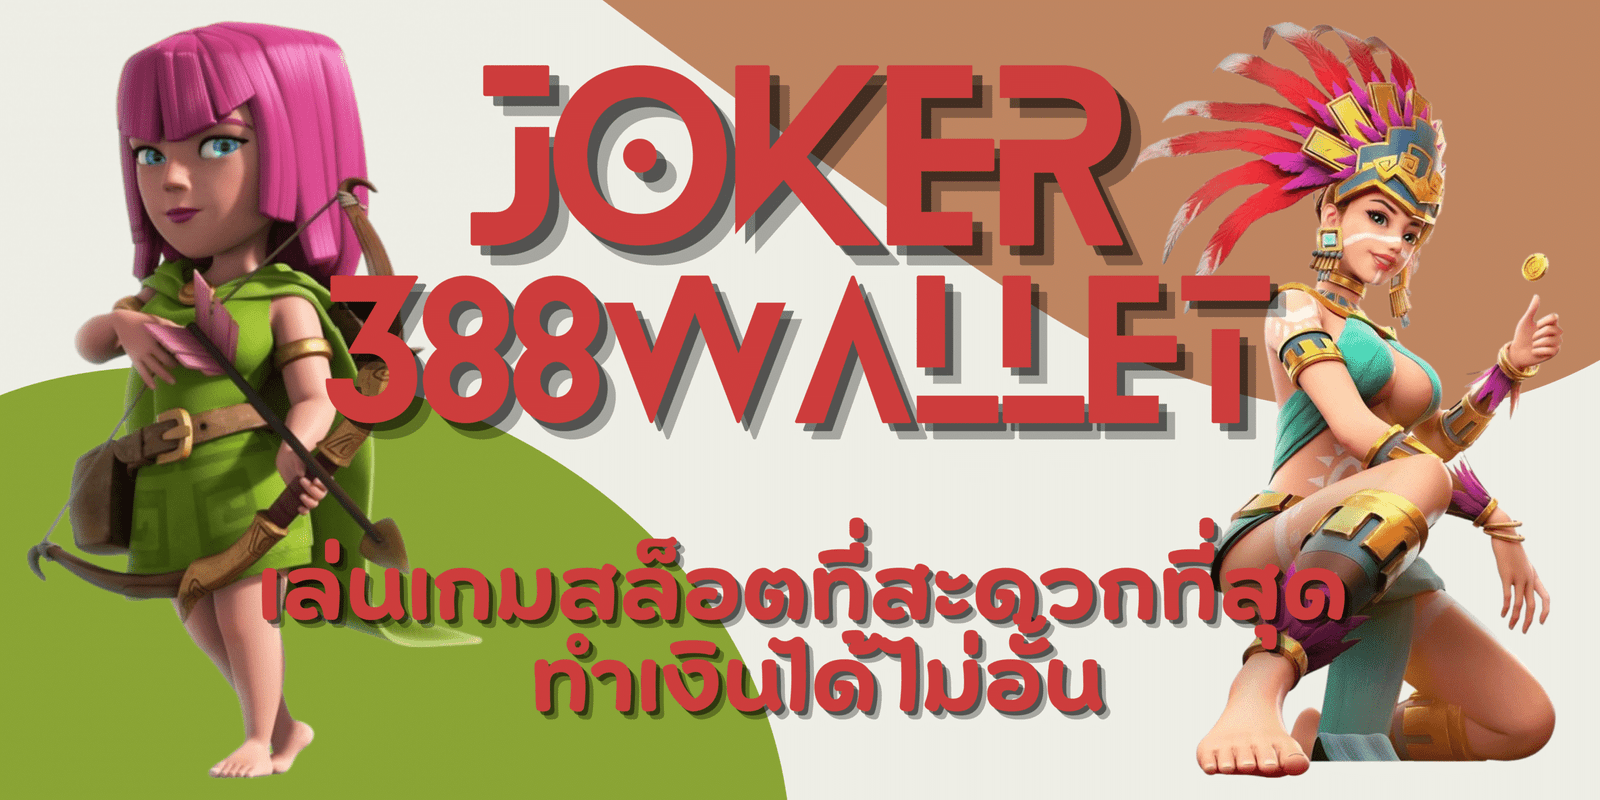 joker-388wallet-ทำเงินได้ไม่อั้น